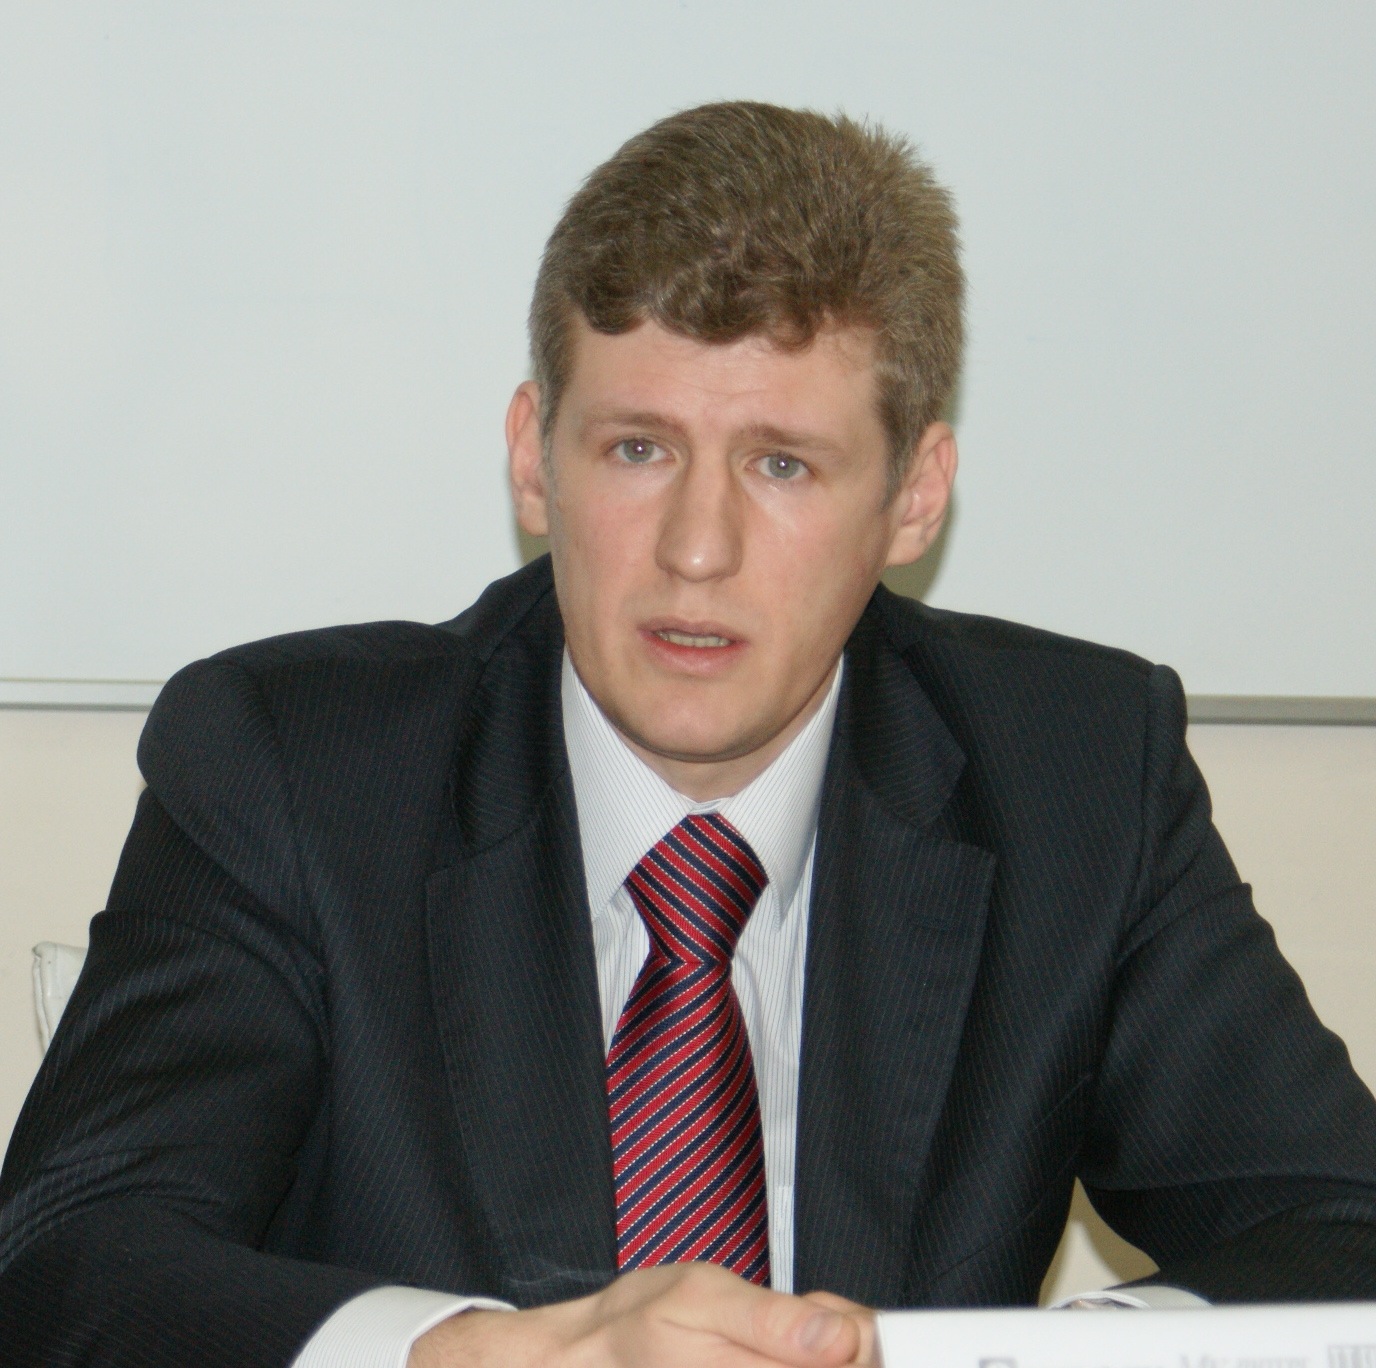 Тимофеев Дмитрий Валентинович - директор по розничному кредитованию ООО 